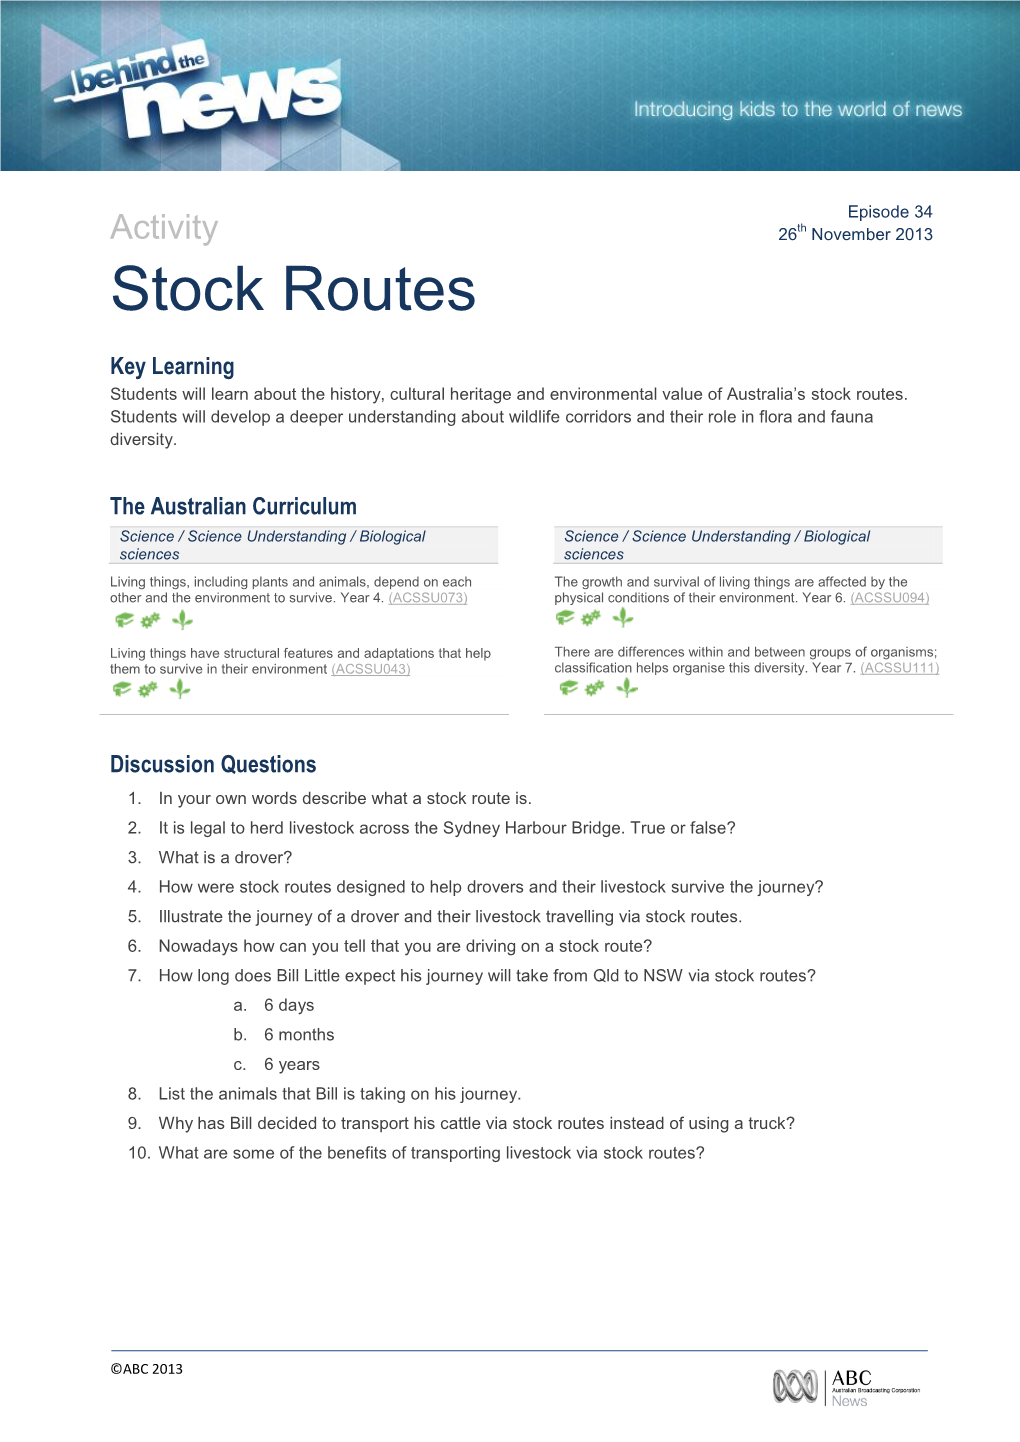 Stock Routes